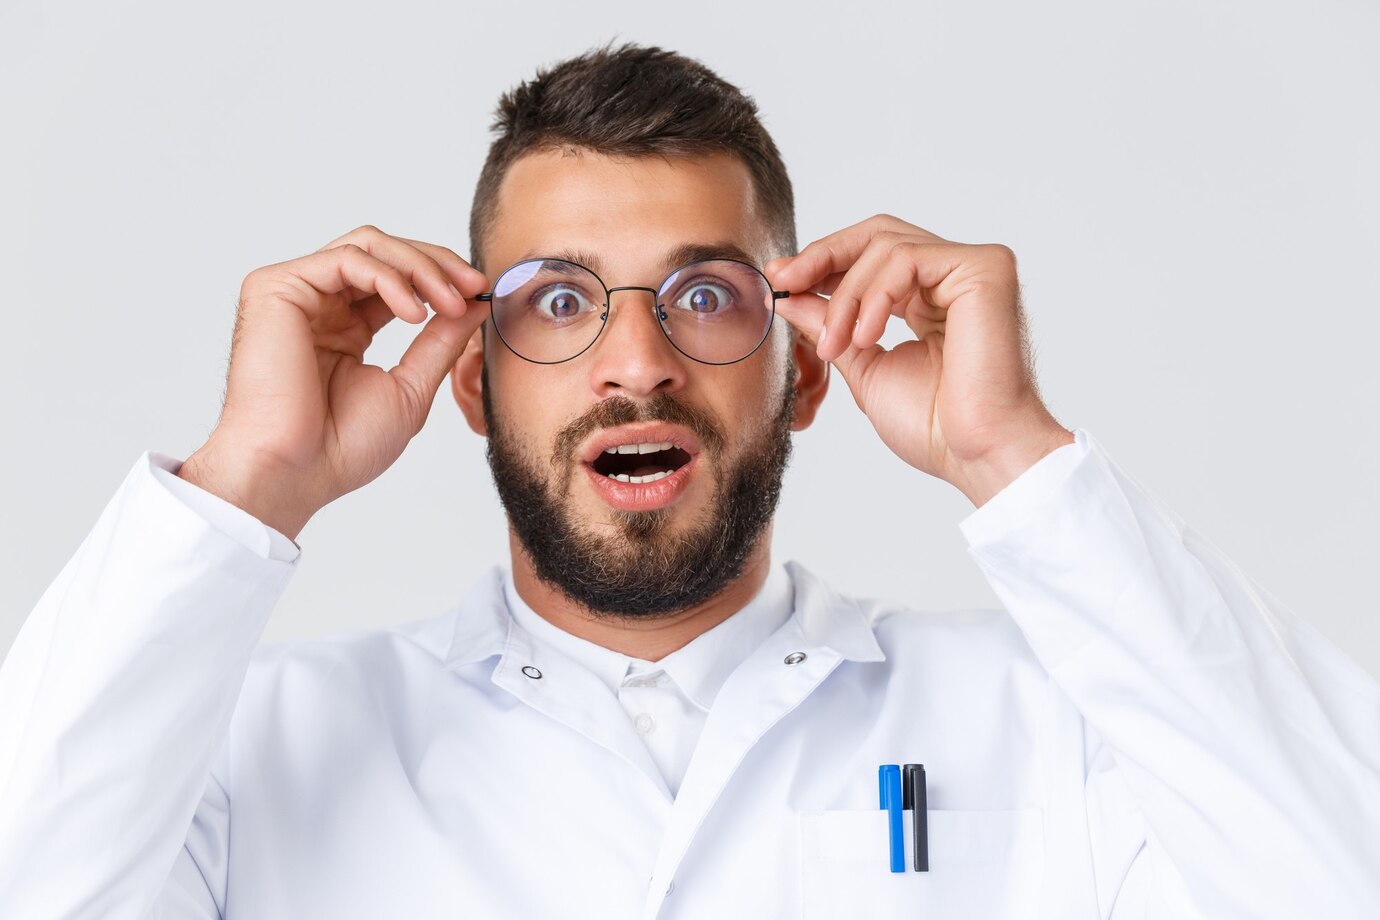 Che voi siate un dentista o un estetista, con occhiali professionali avrete una visione perfettamente nitida